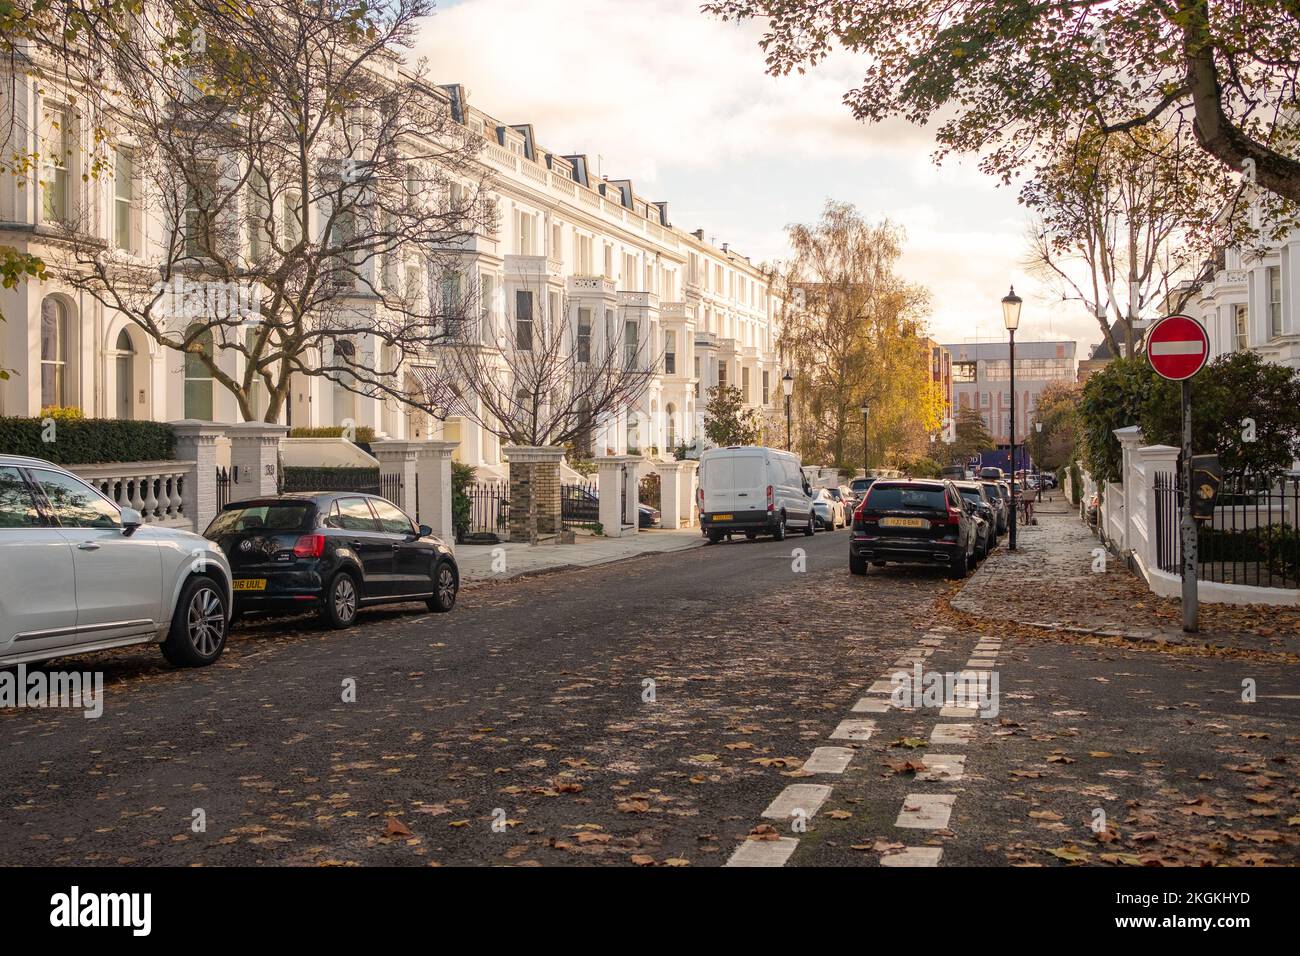 Londres- novembre 2022 : maisons en stuc blanc haut de gamme à Kensington, ouest de Londres Banque D'Images